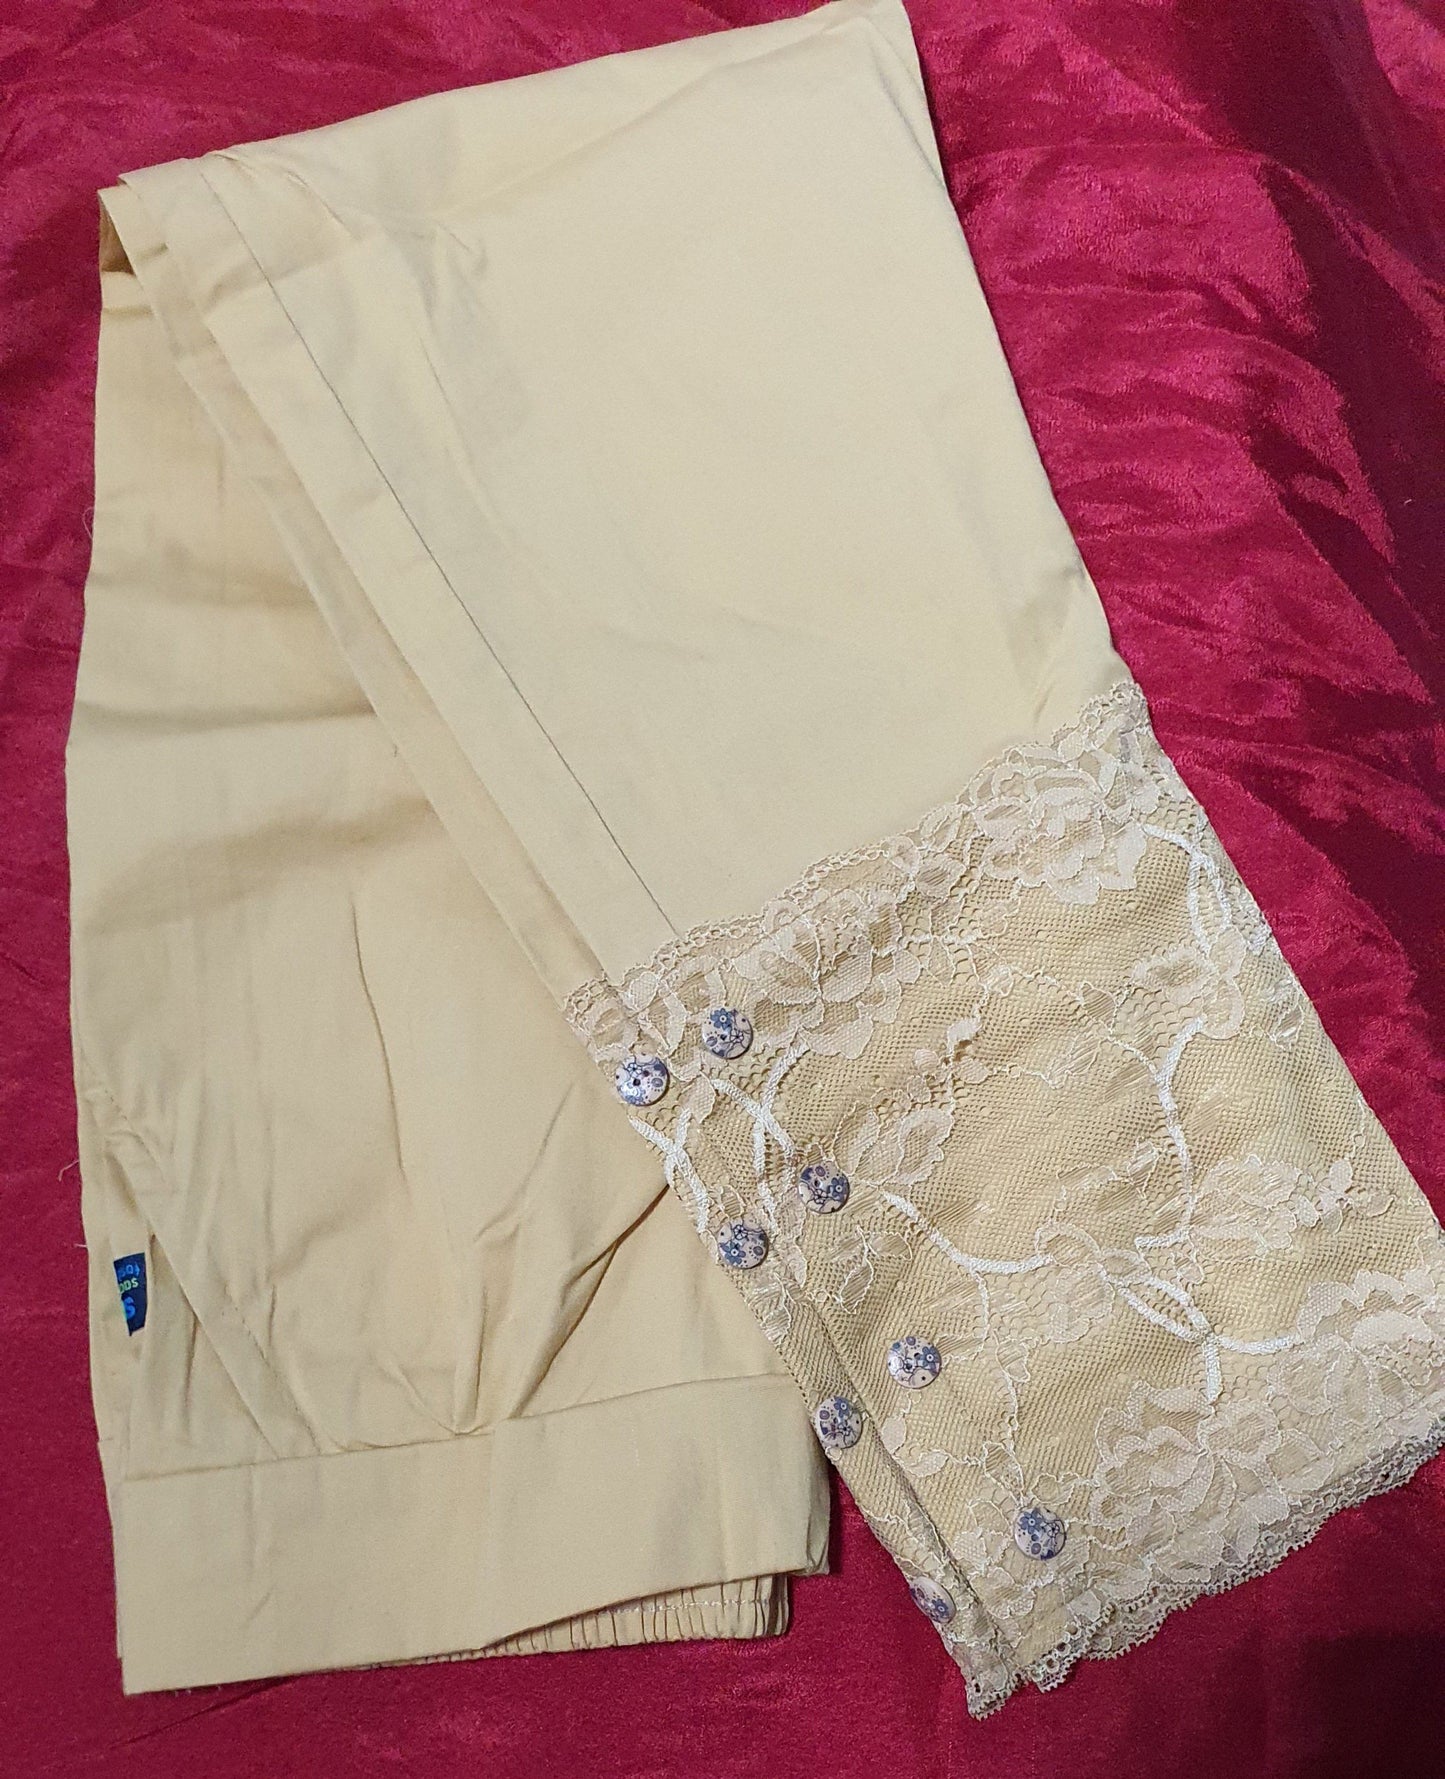 Designer Lace Cotton Lycra Pants in 5 colors Cotton Lycra Pants Shopindiapparels.com Skin 